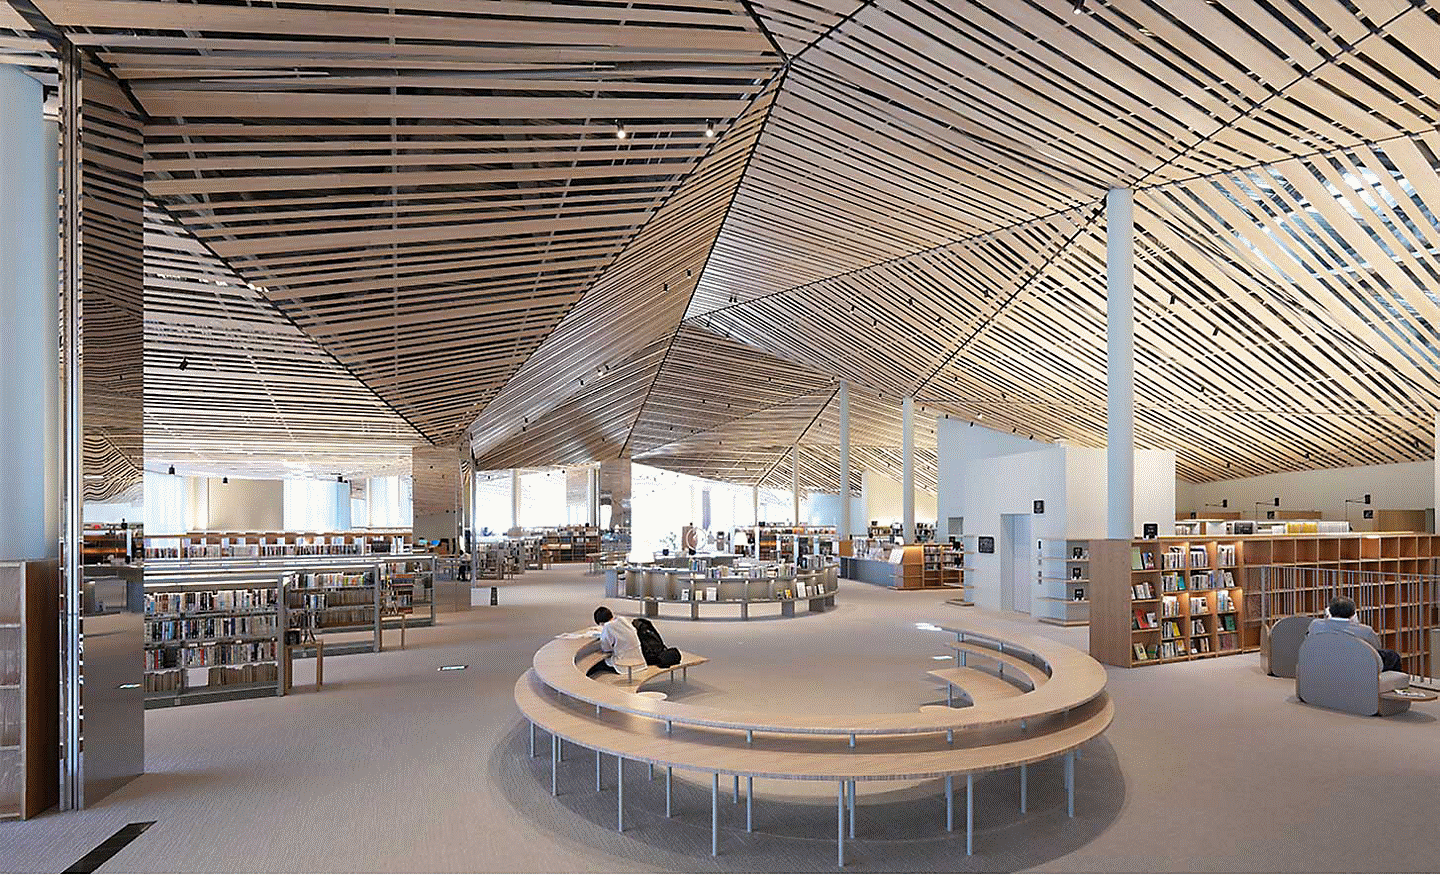 Immagine dell’interno di una grande biblioteca con decorazioni articolate e assi di legno sul soffitto, con un’elevata risoluzione da angolo ad angolo